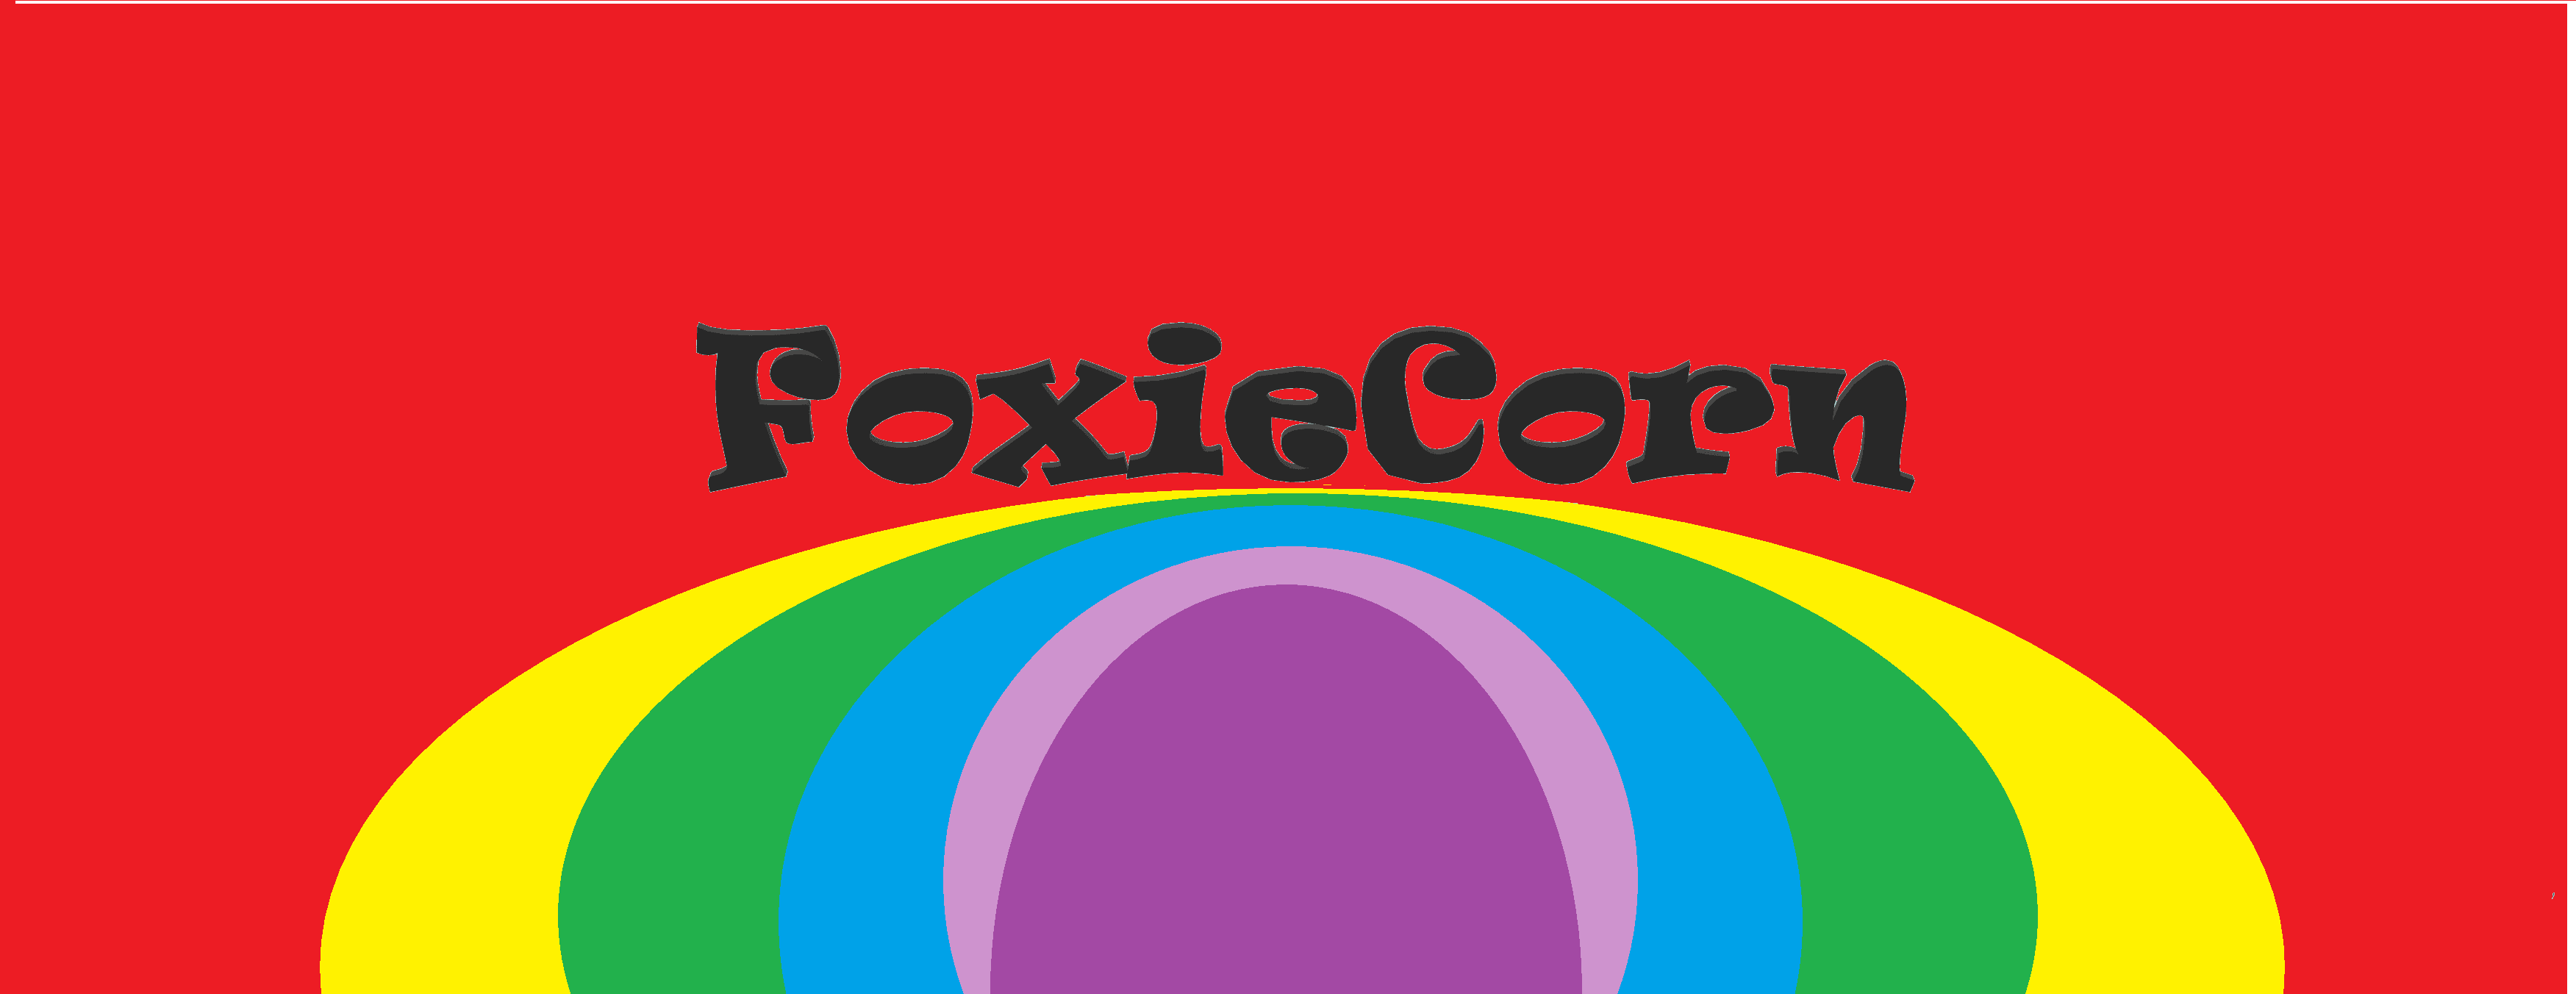 FoxieCorn_SkullRider banner